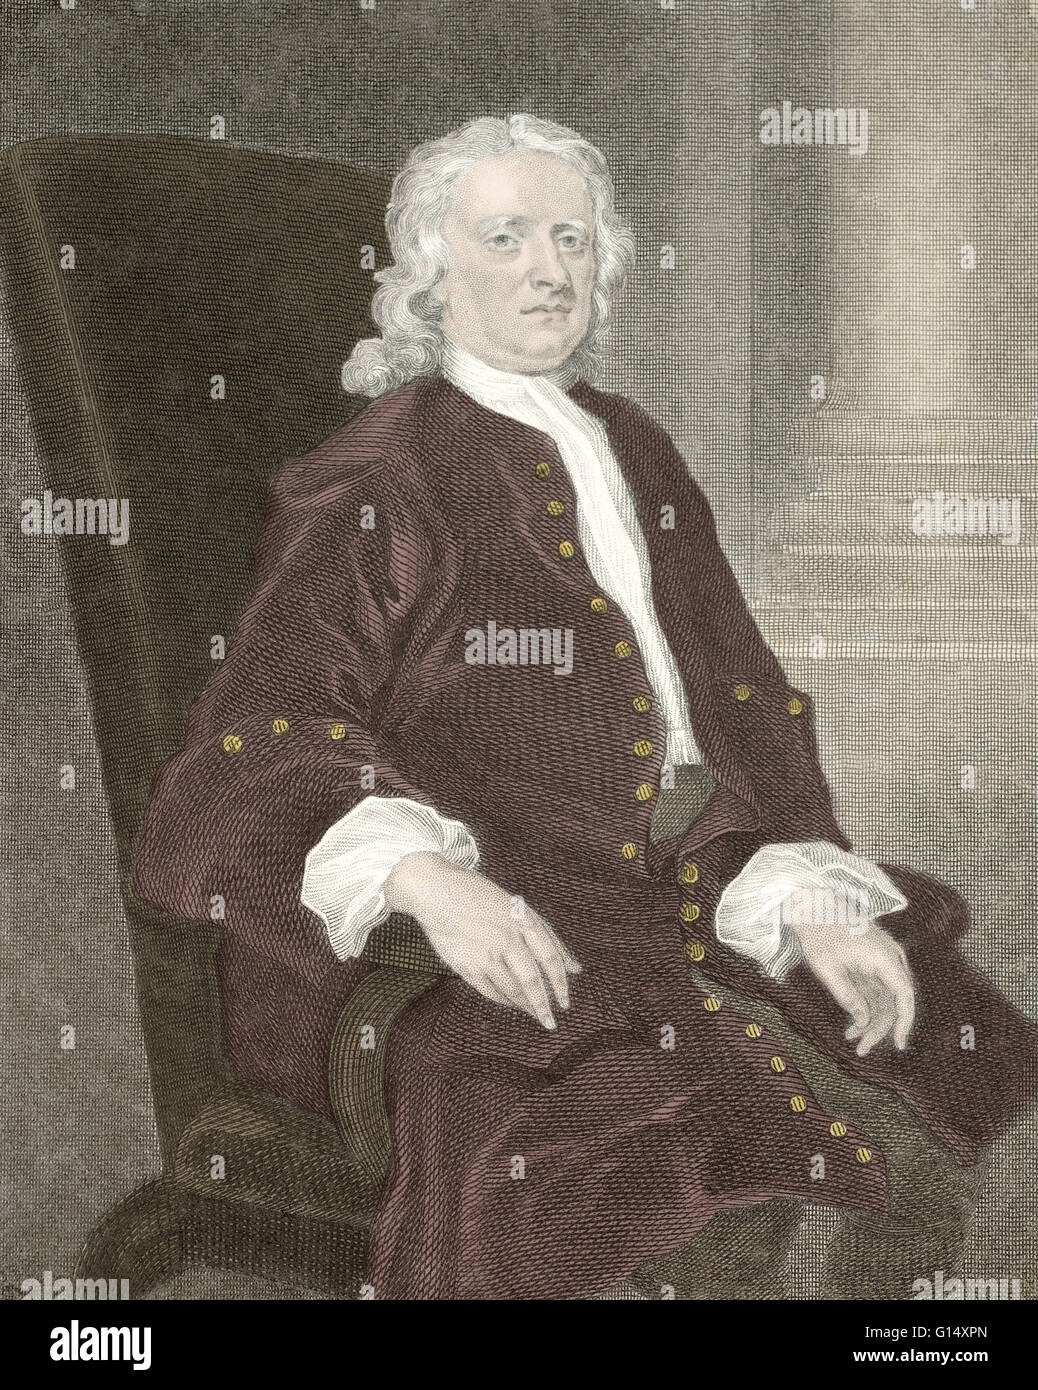 Isaac Newton (1642-1727) fu un fisico inglese, matematico, astronomo, filosofo naturale, alchimista e teologo. La sua monografia Philosophae Naturalis Principia Mathematica, pubblicato nel 1687, getta le basi per la maggior parte della meccanica classica Foto Stock